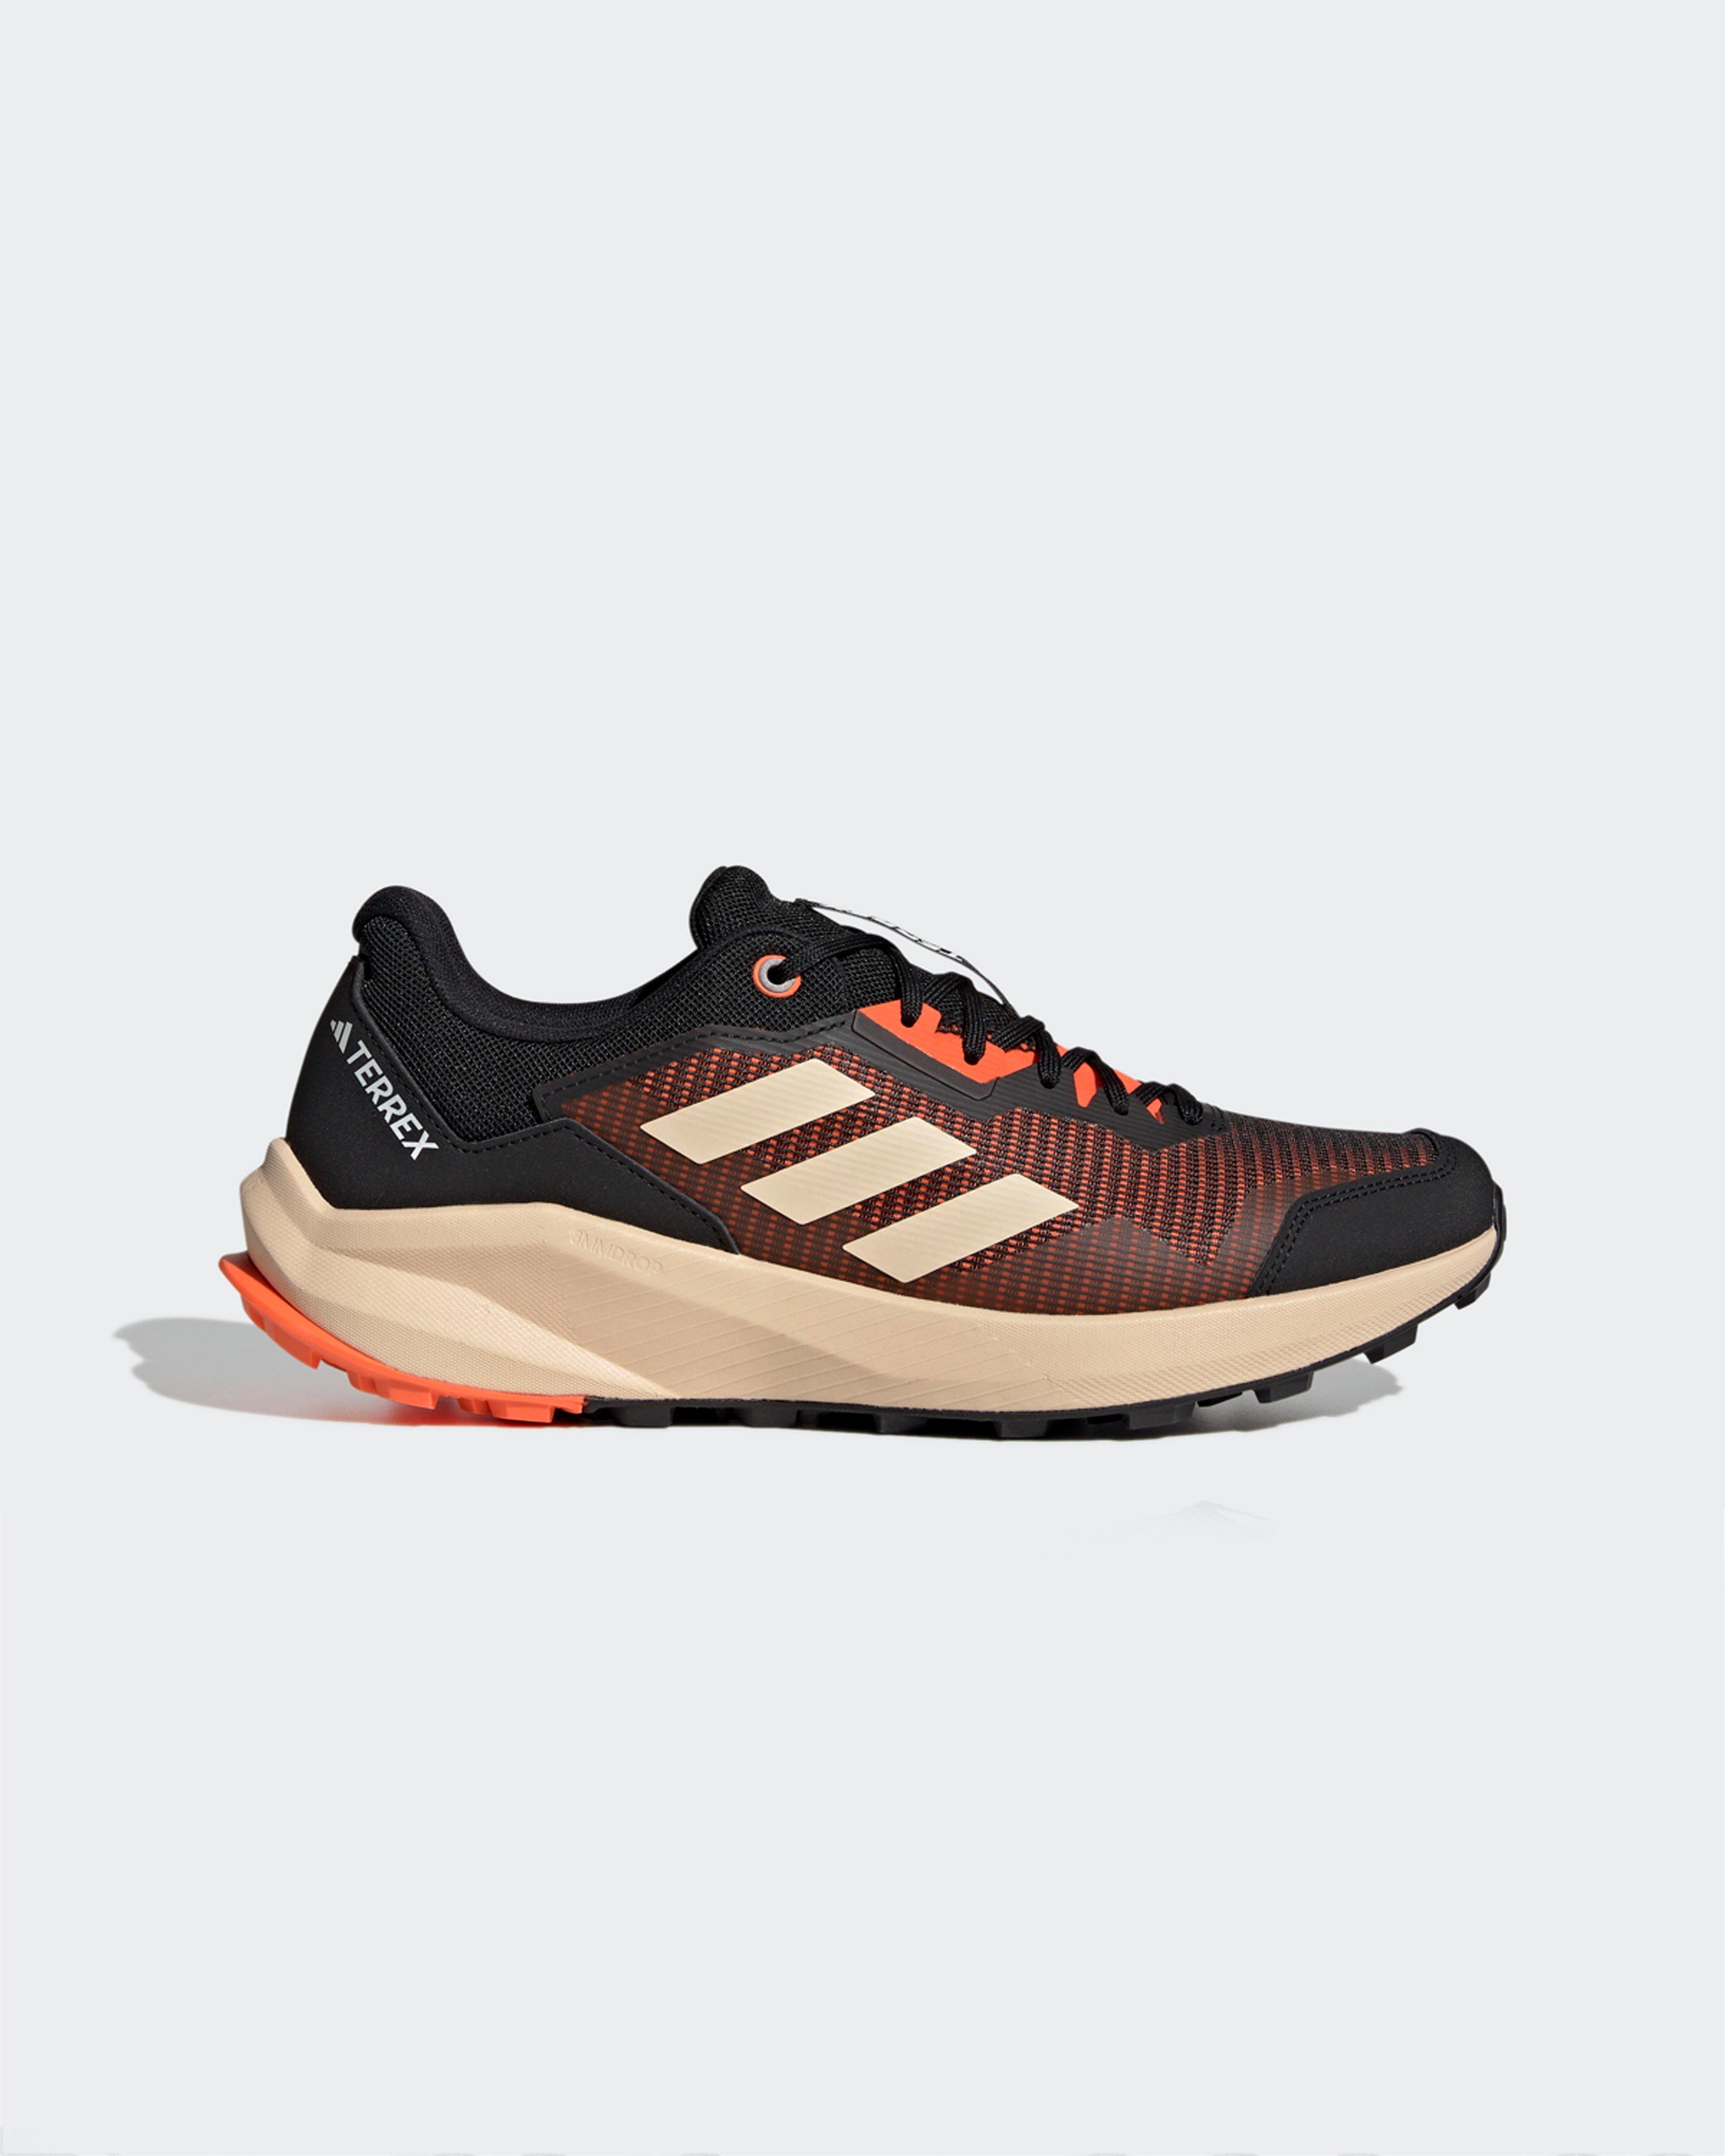  Adidas Men’s TERREX TRAILRIDER Trail Running Shoes -  Orange